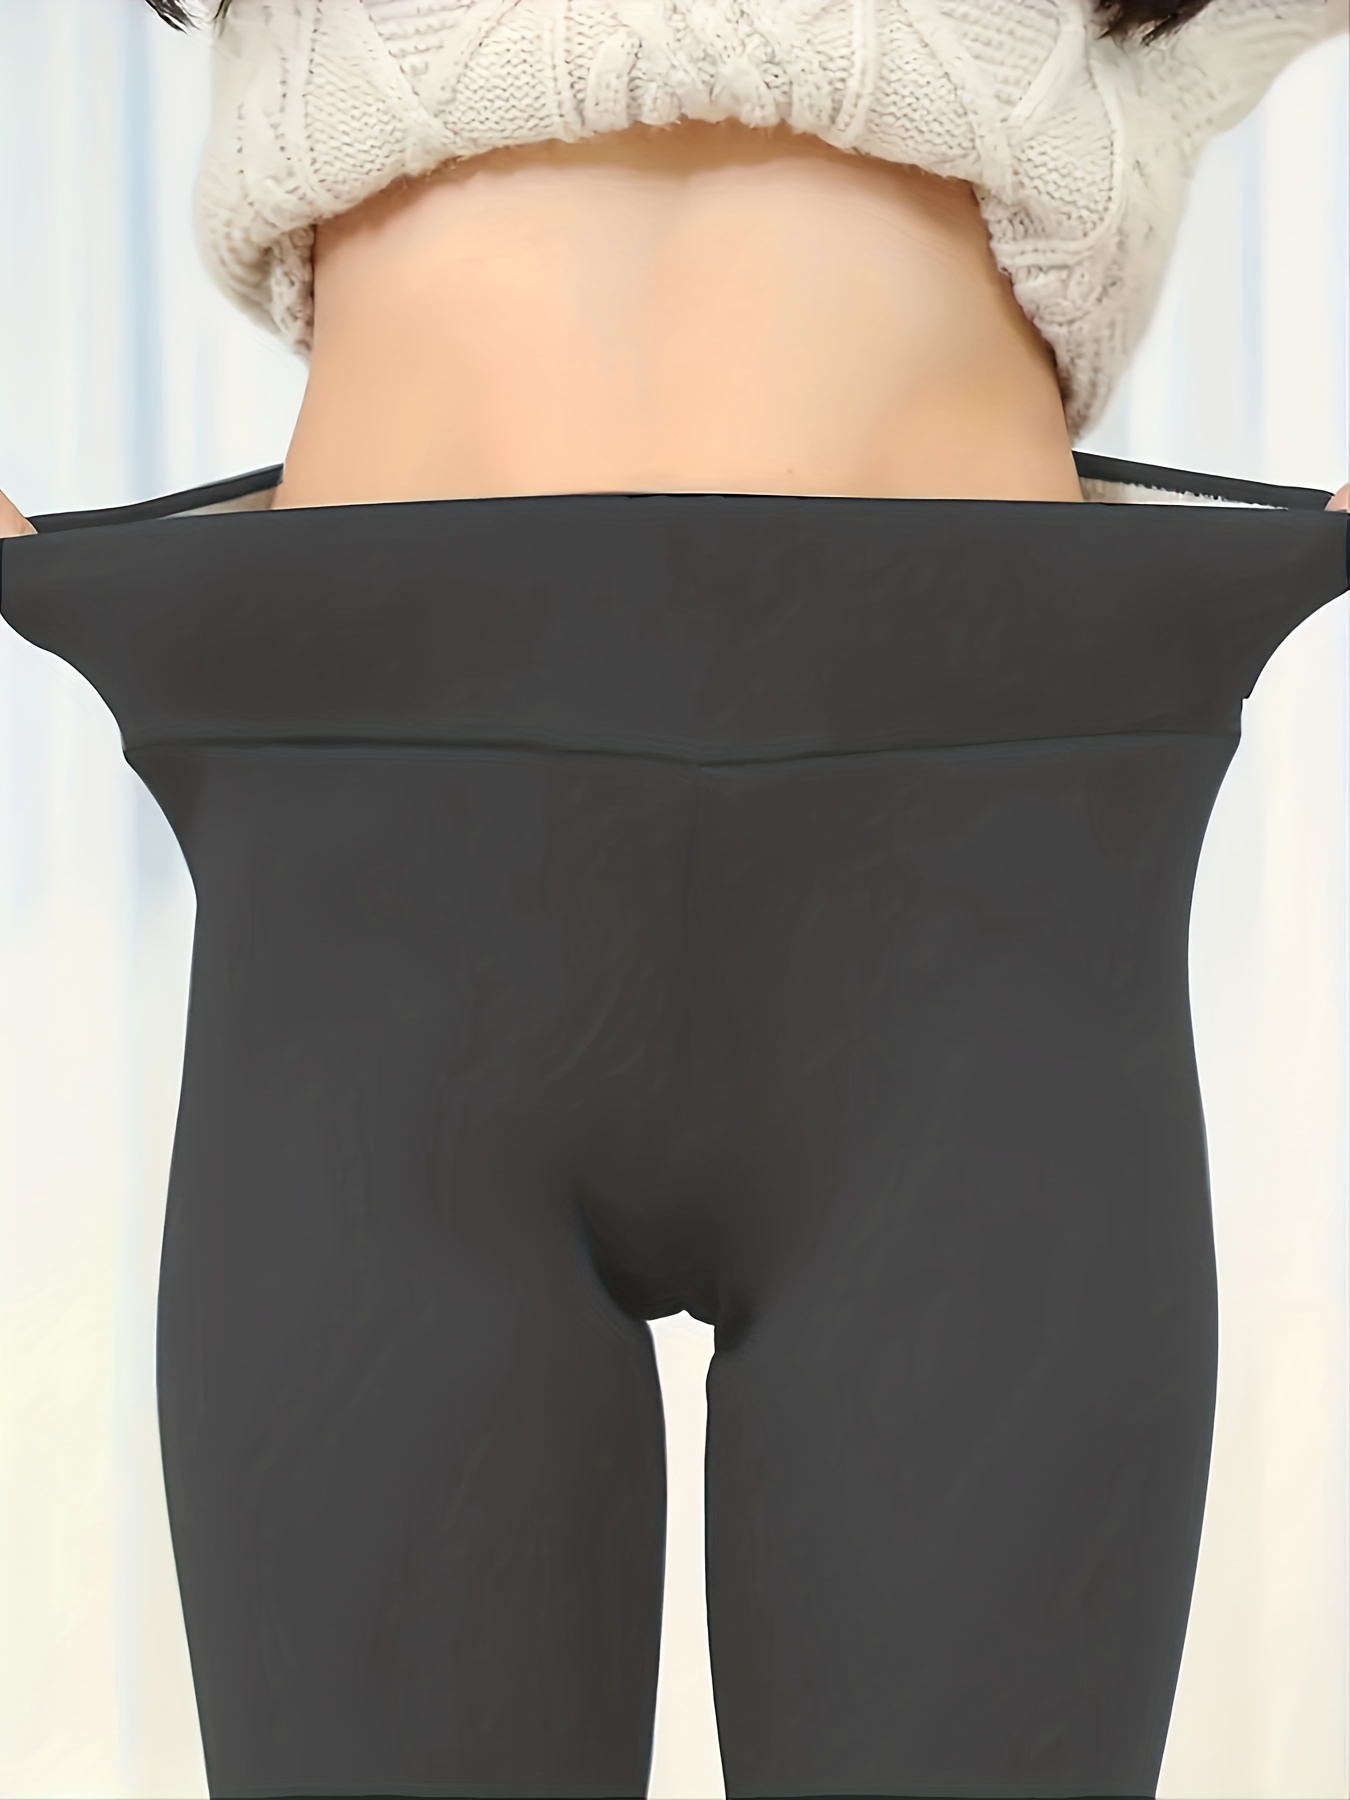 Xinxinyy Women Underwear Leggings Elastic High Waist Thermal Pants